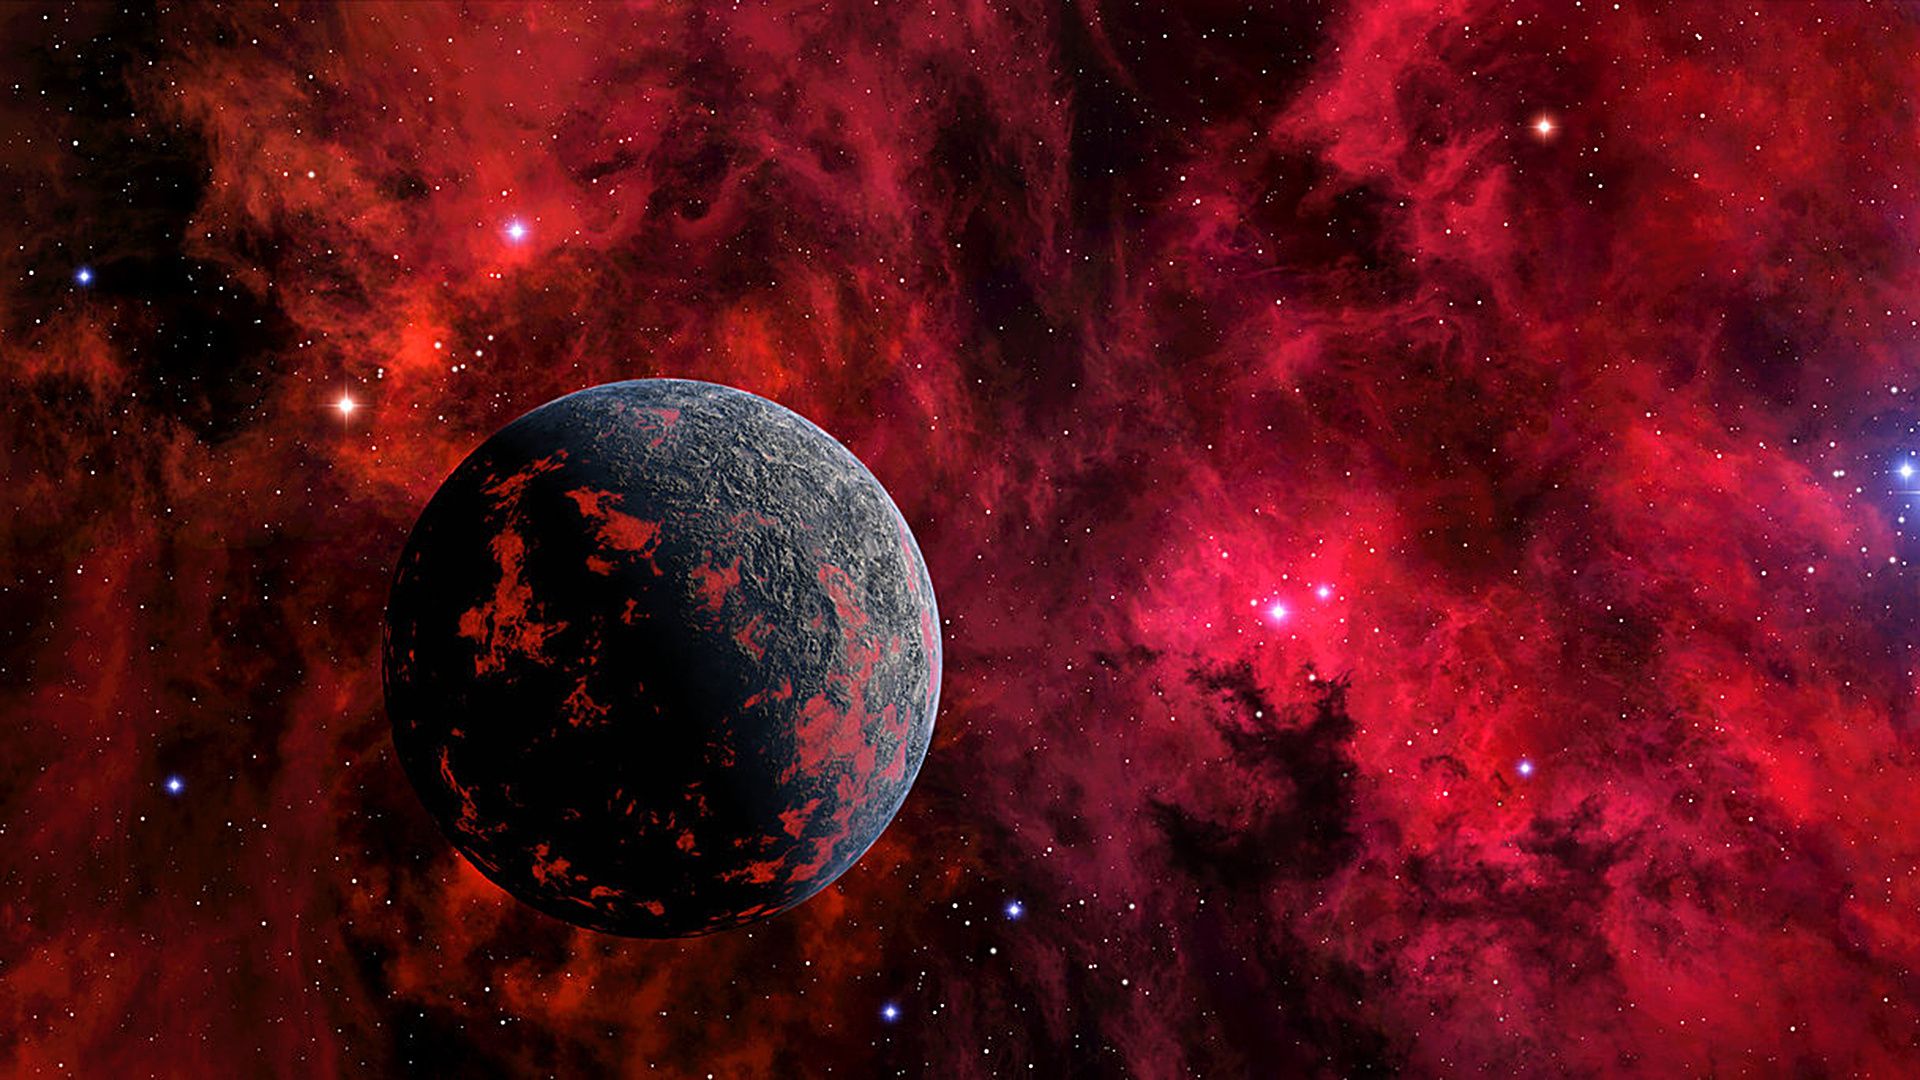 Wallpaper vũ trụ đỏ trên WallpaperDog là một lựa chọn tuyệt vời cho những ai yêu thích không gian và vũ trụ. Với những hình ảnh lộng lẫy này, bạn sẽ có cảm giác như đang đặt chân lên chuyến tàu vũ trụ để khám phá những điều phi thường. Hãy tải ngay và khám phá ngay bây giờ.